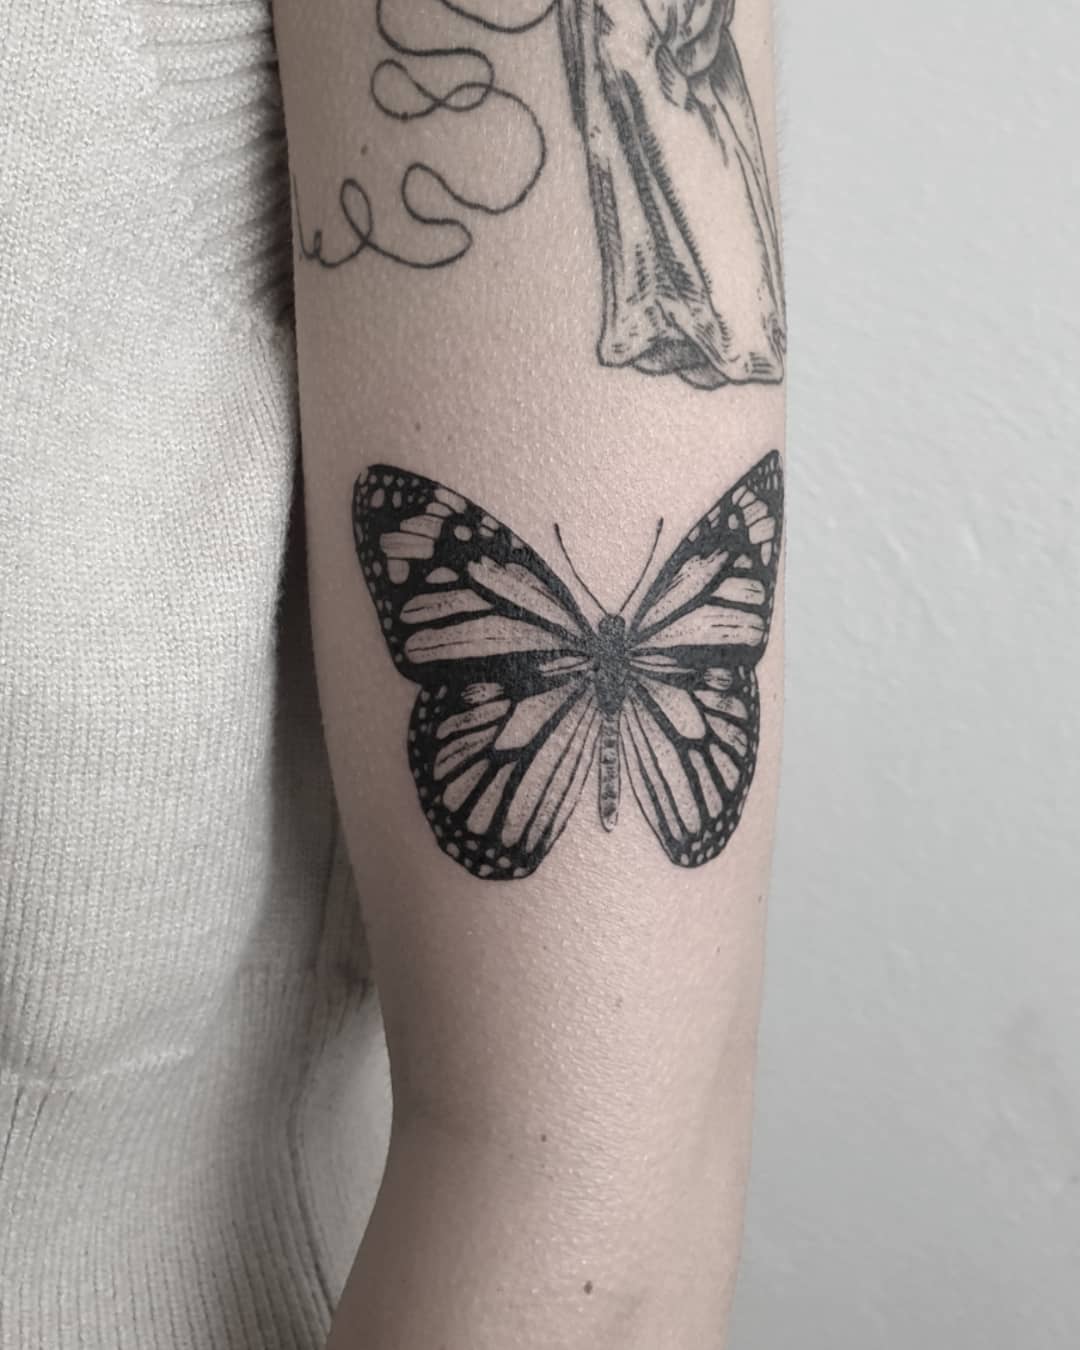 Cute little butterfly for homegirl @jarnuschka 
.
.
.
. 
#tattoo #tattoos #tatto